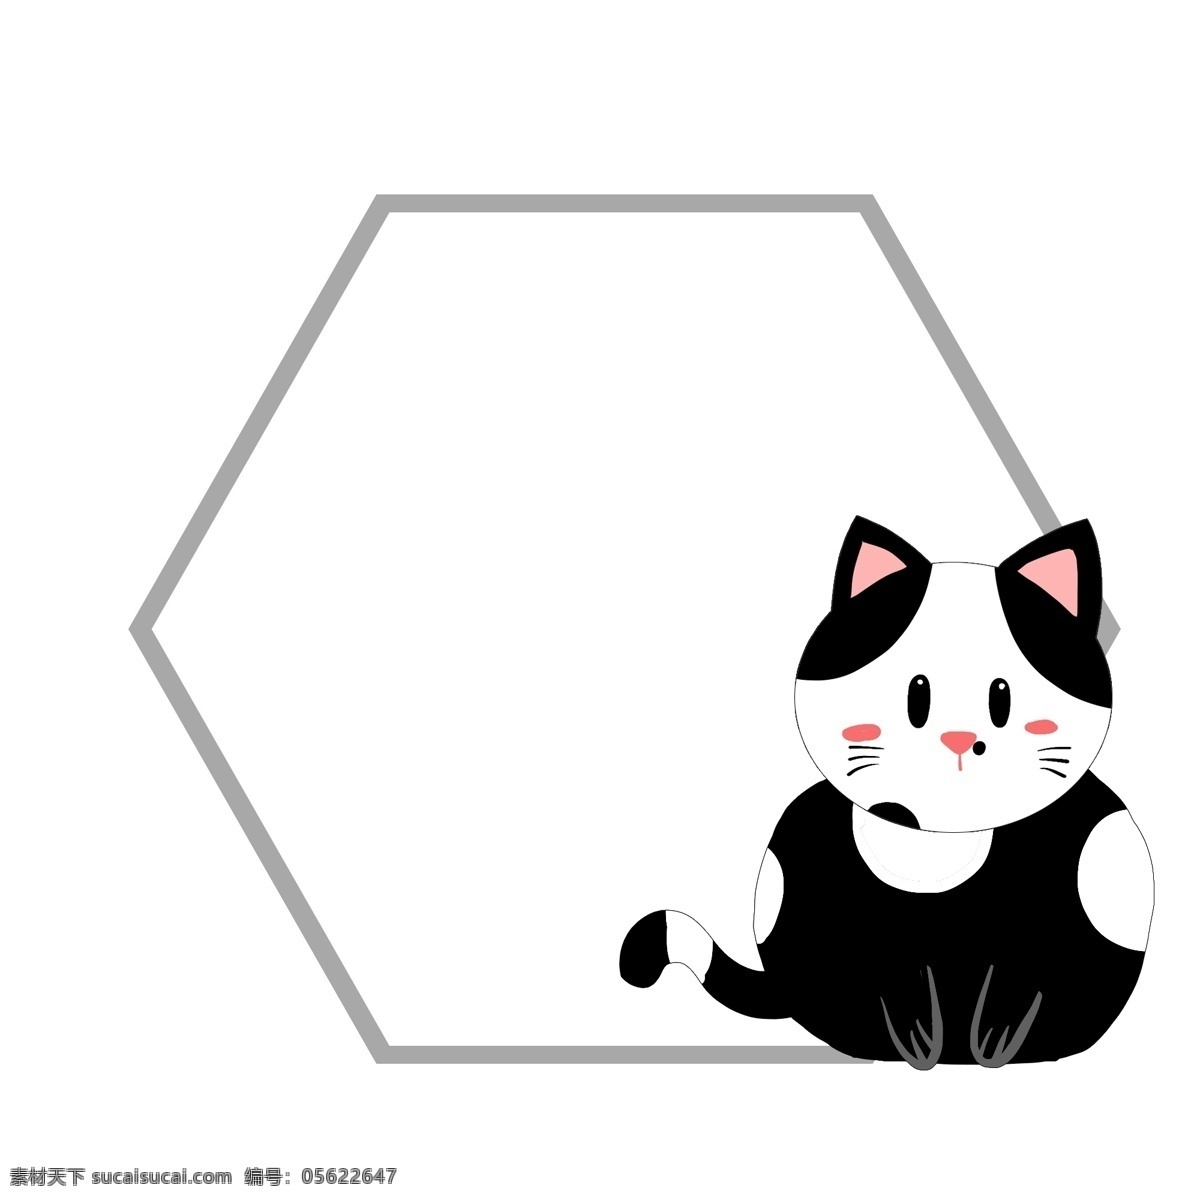 可爱 小猫 边框 插画 小猫边框 可爱的小猫 黑色猫咪 猫猫 黑猫边框 六边形